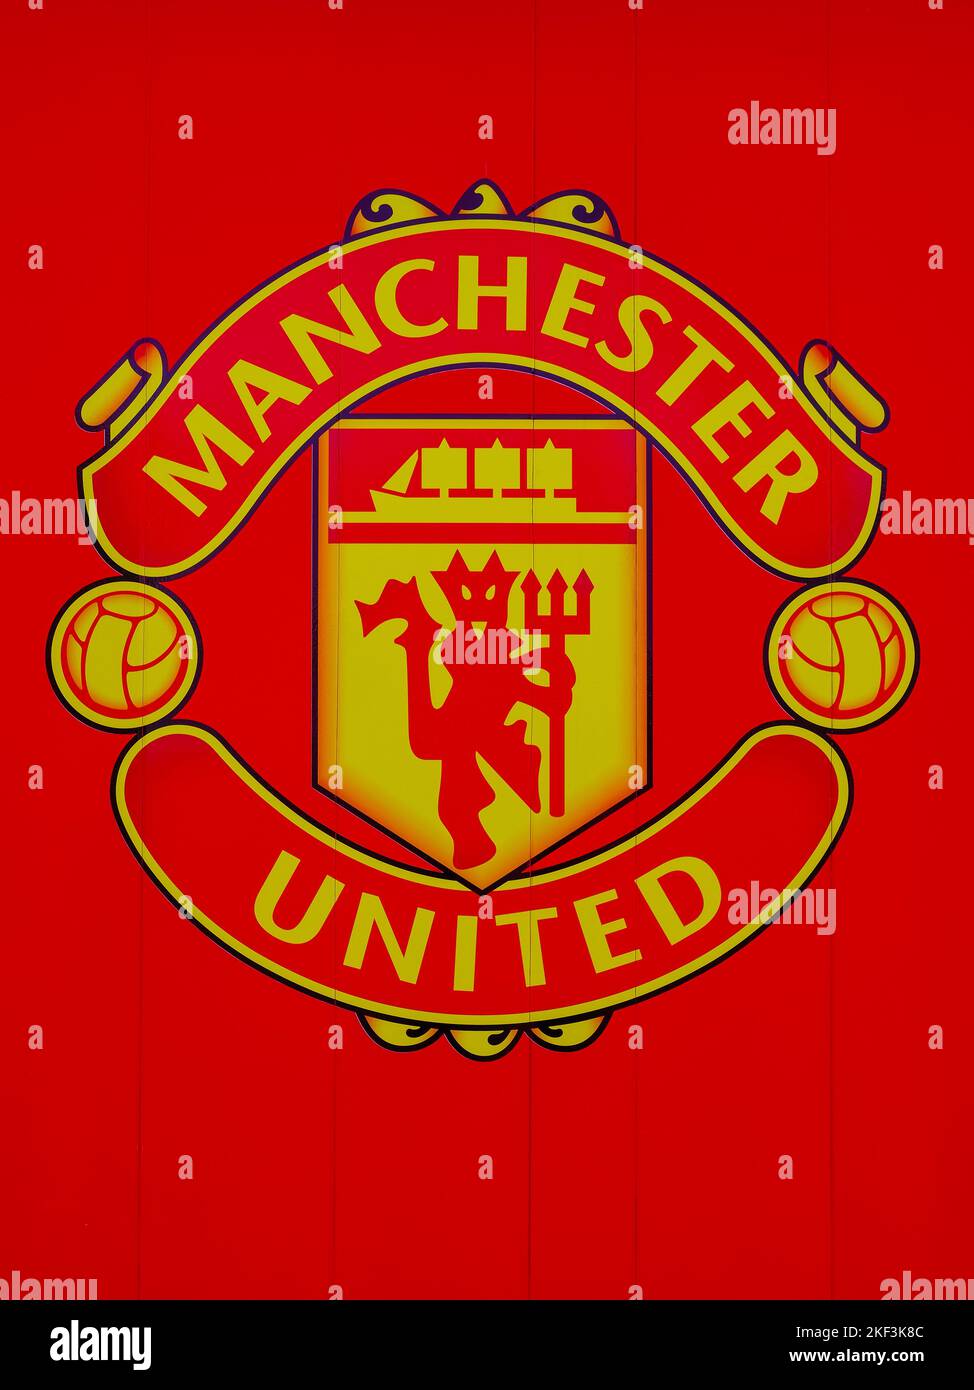 Escudo del Manchester United Football Club. Logotipo del Manchester United Foto de stock